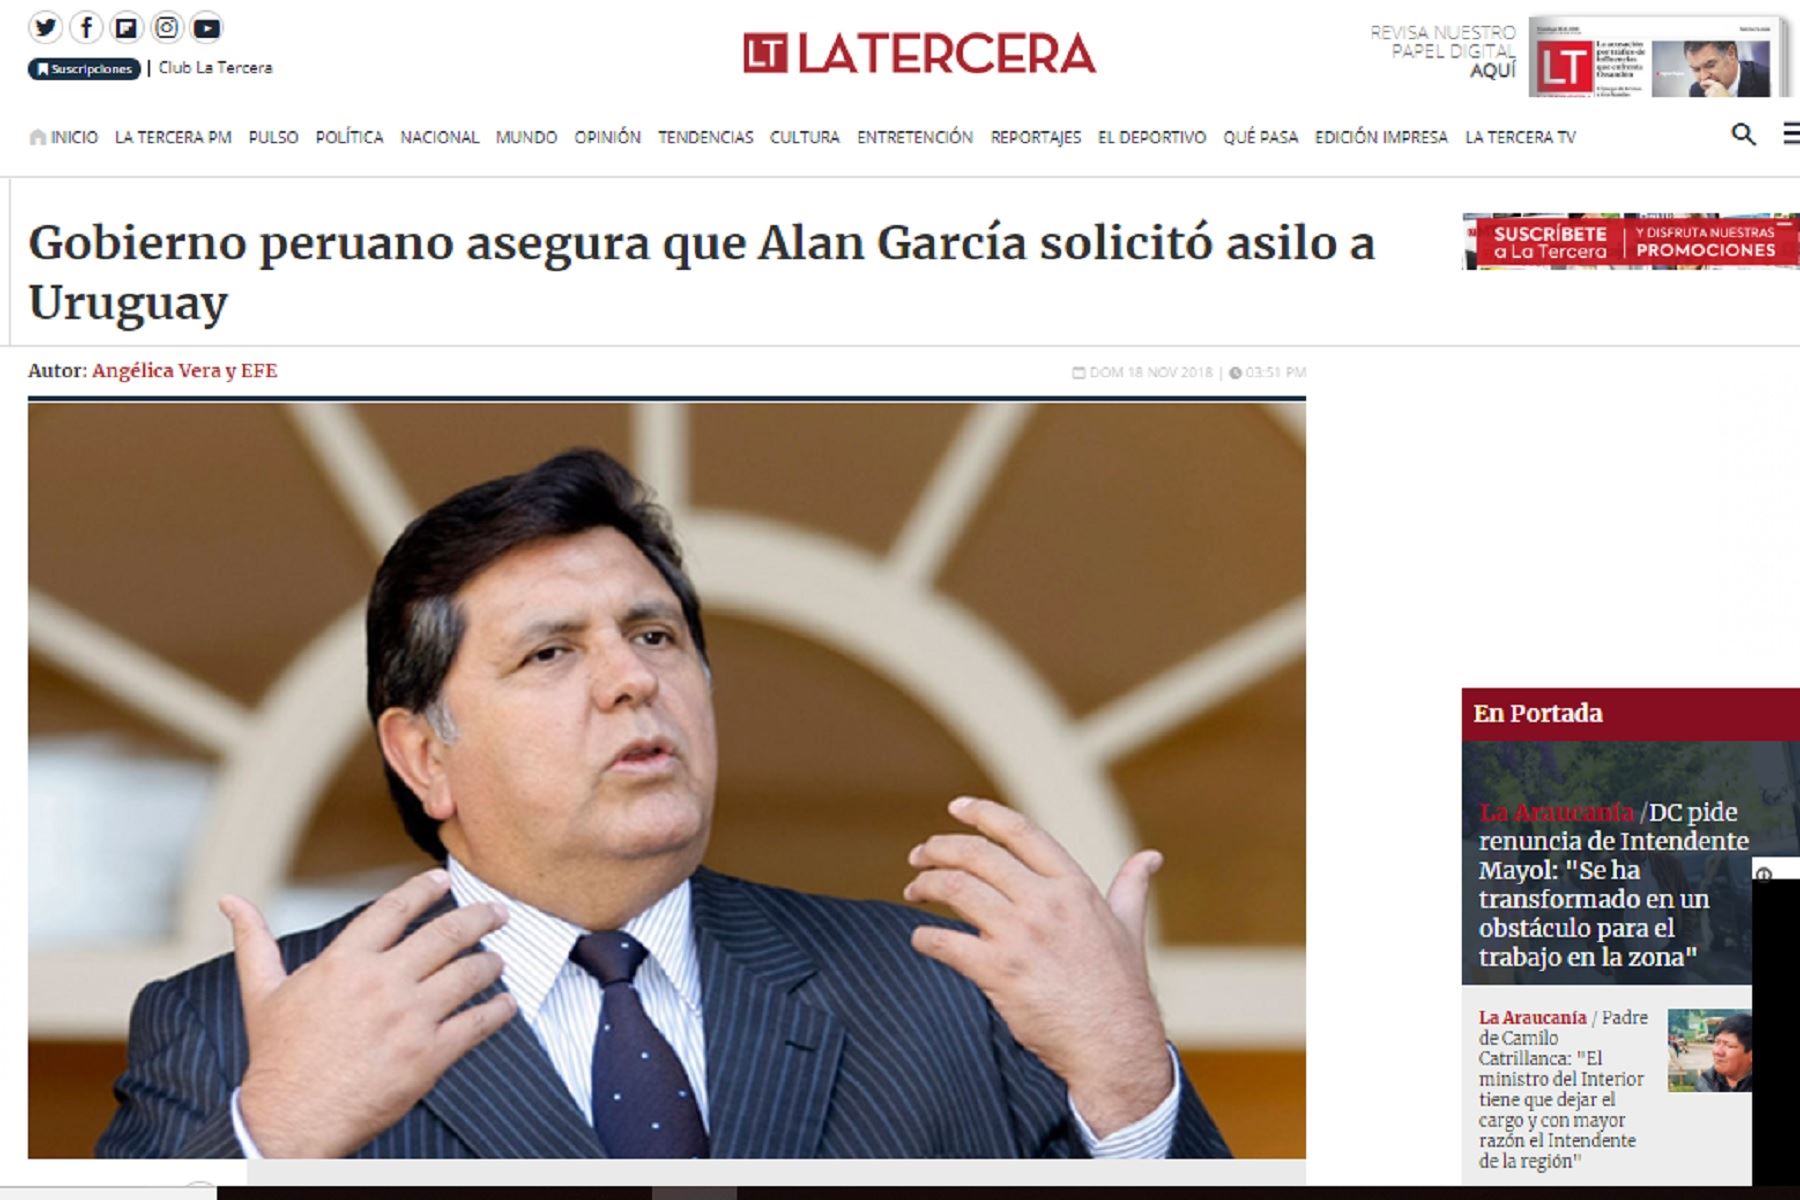 Medios internacionales informa sobre el pedido de asilo de Alan García.